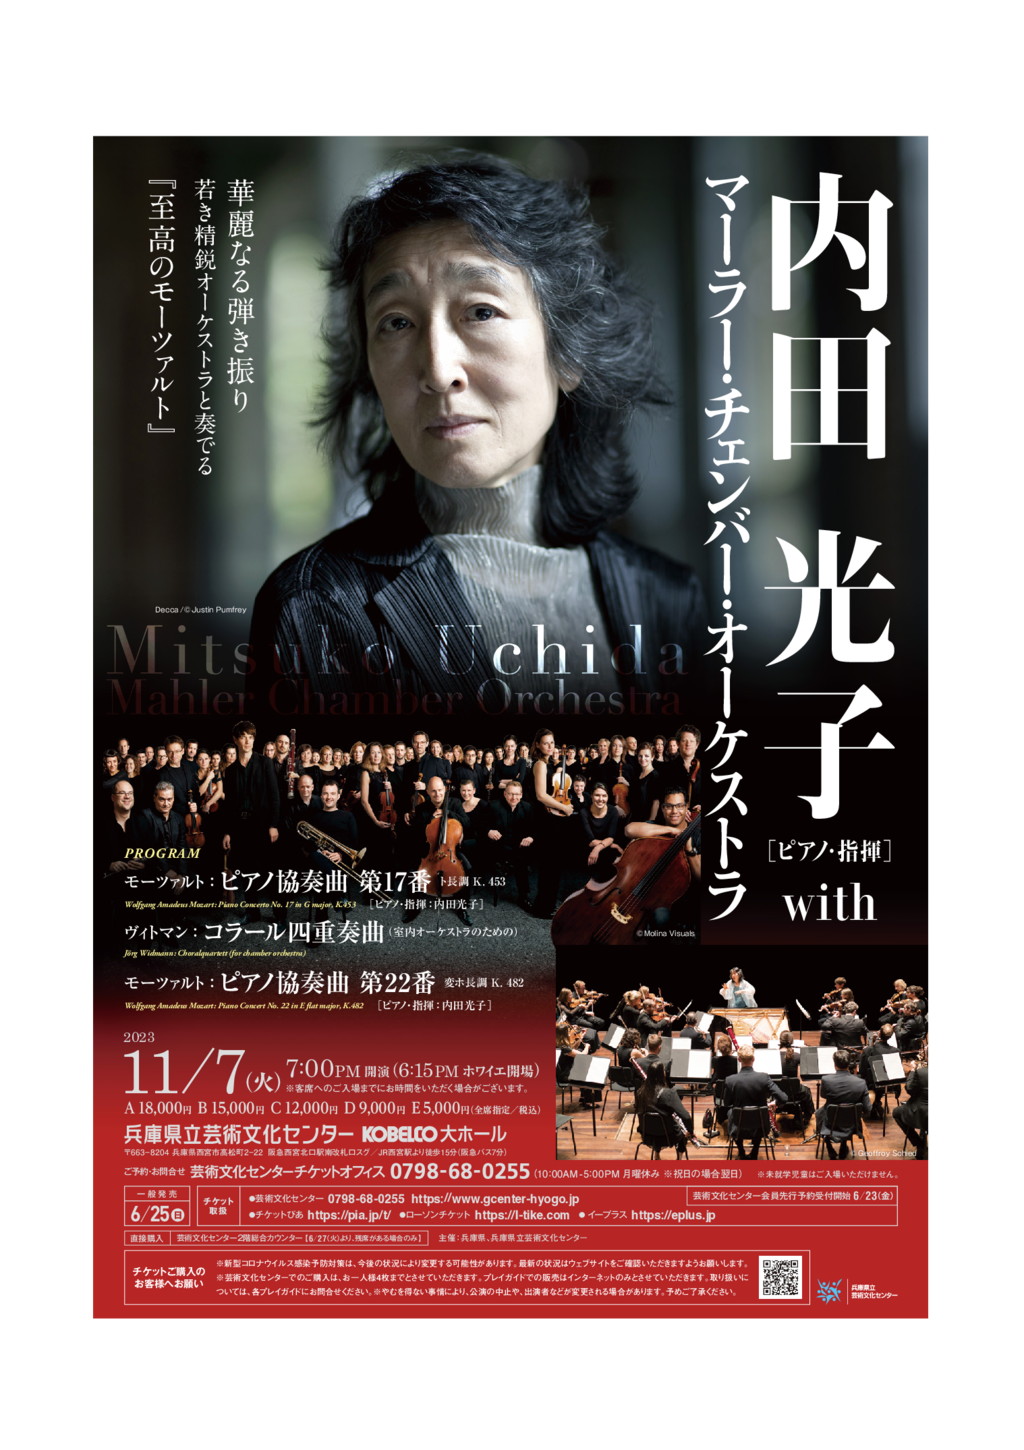 内田光子(ピアノ・指揮) with マーラー・チェンバー・オーケストラ 兵庫公演